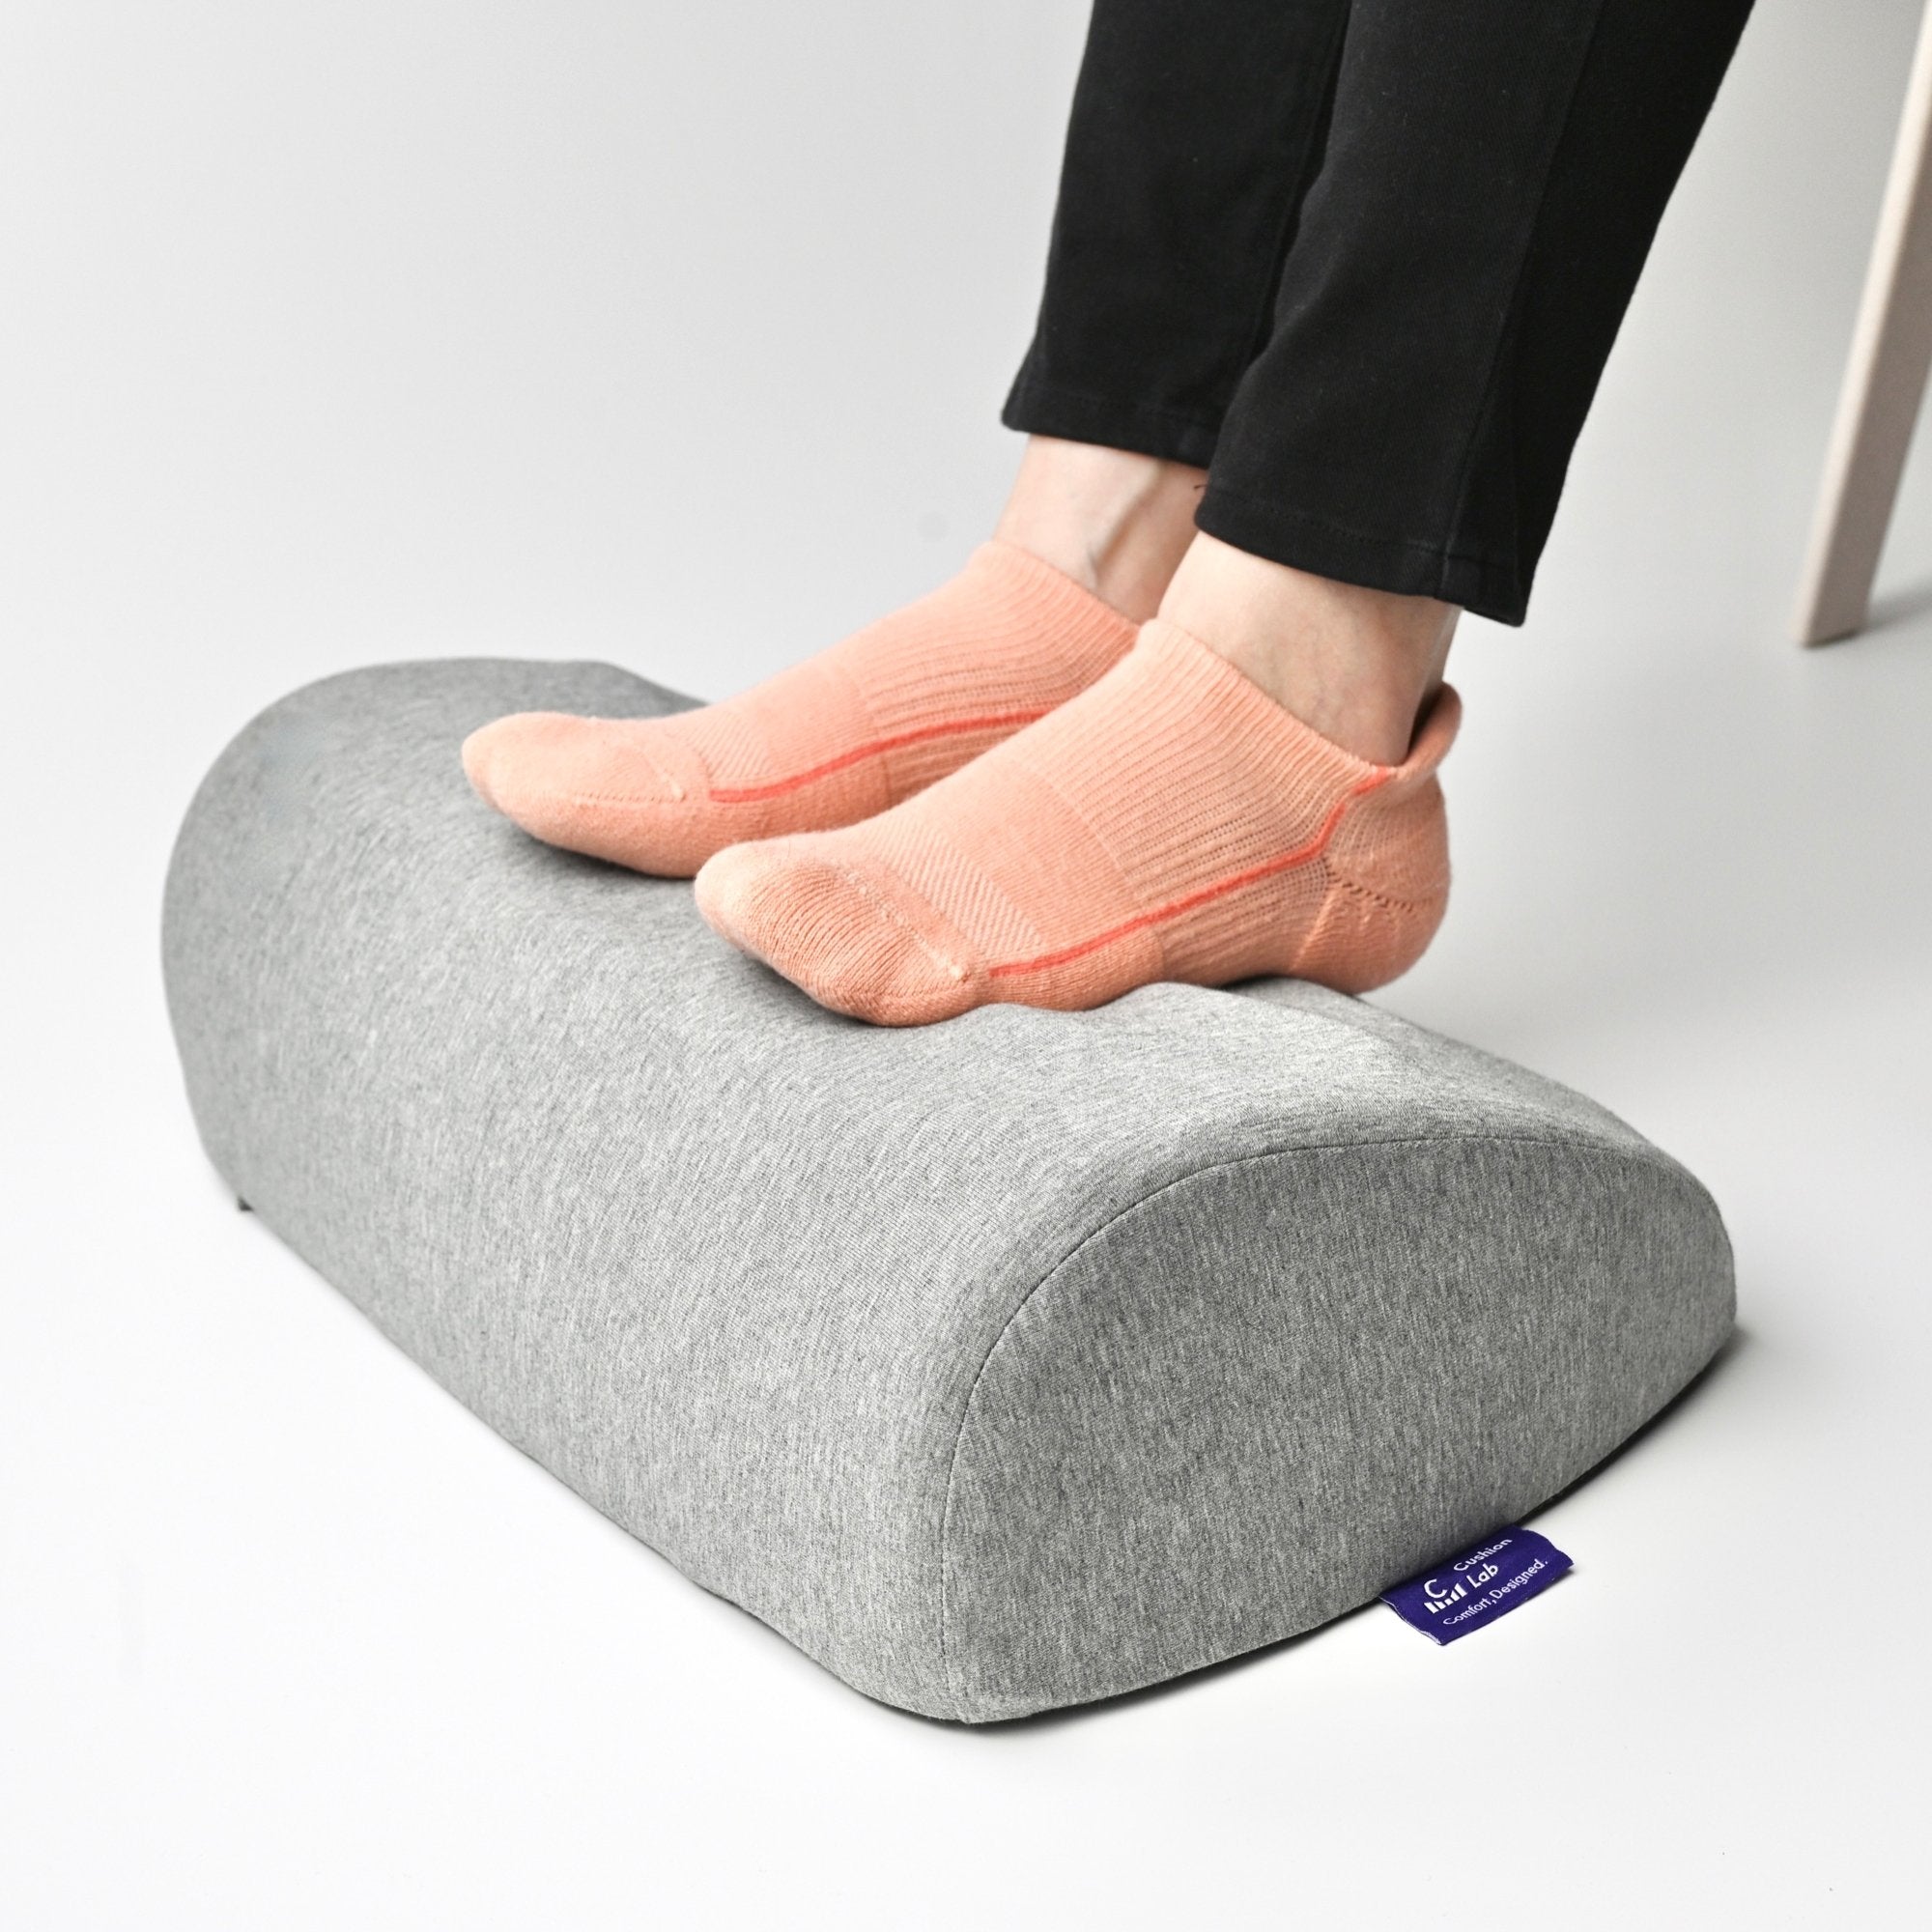 Footrest Cushion